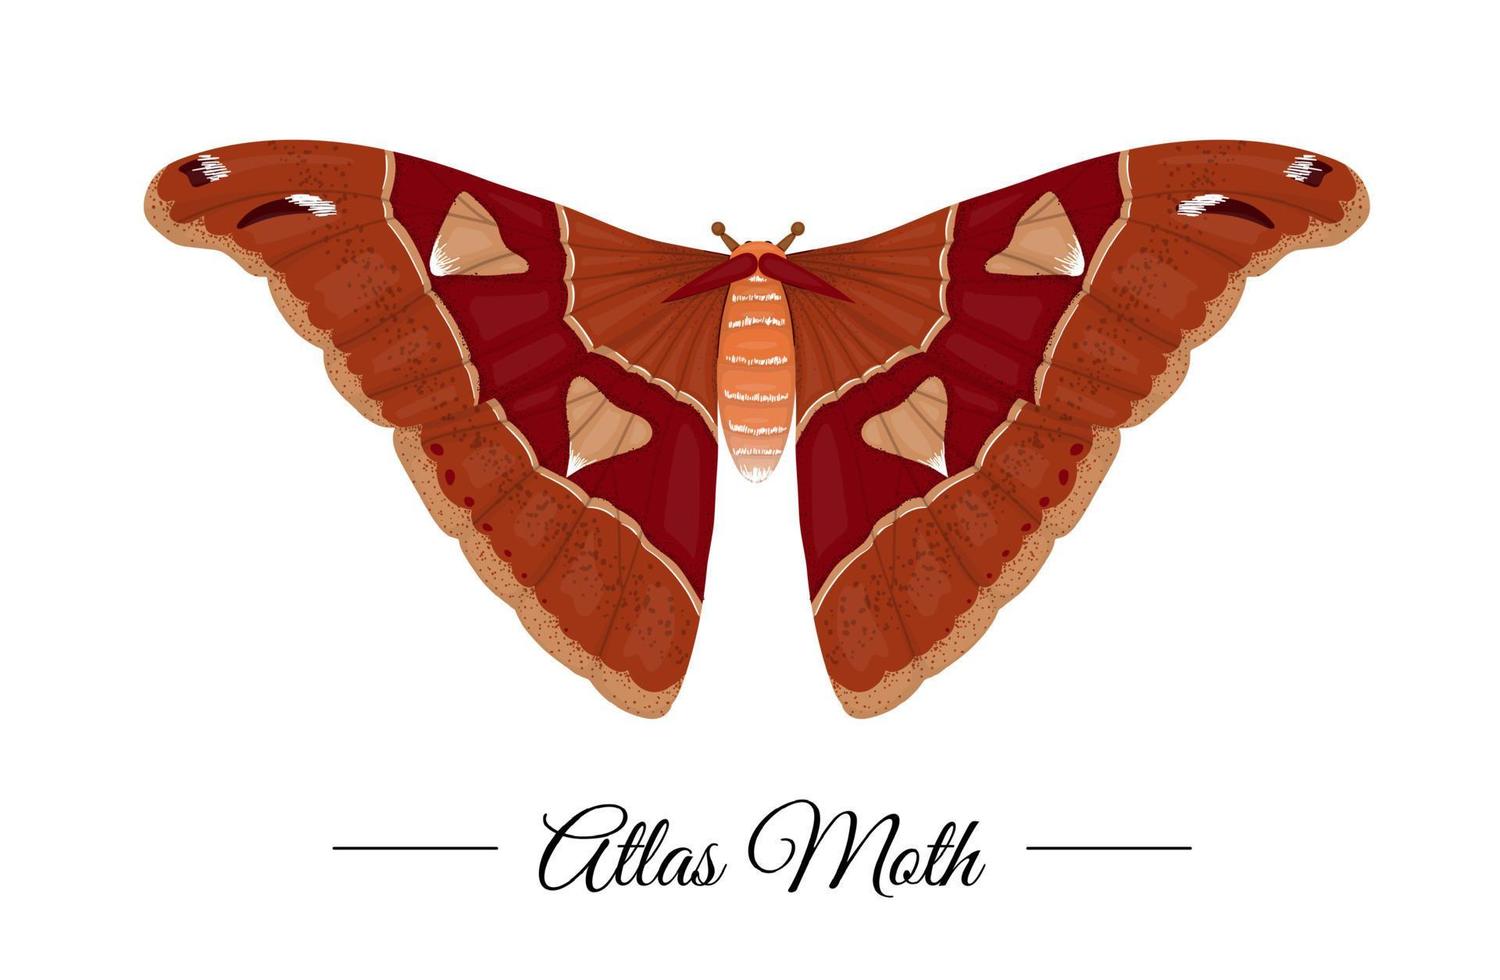 vector hand getekend gekleurde tropische atlas nachtvlinder geïsoleerd op een witte achtergrond. logo met tropisch thema voor natuurlijk ontwerp. vlinder illustratie.